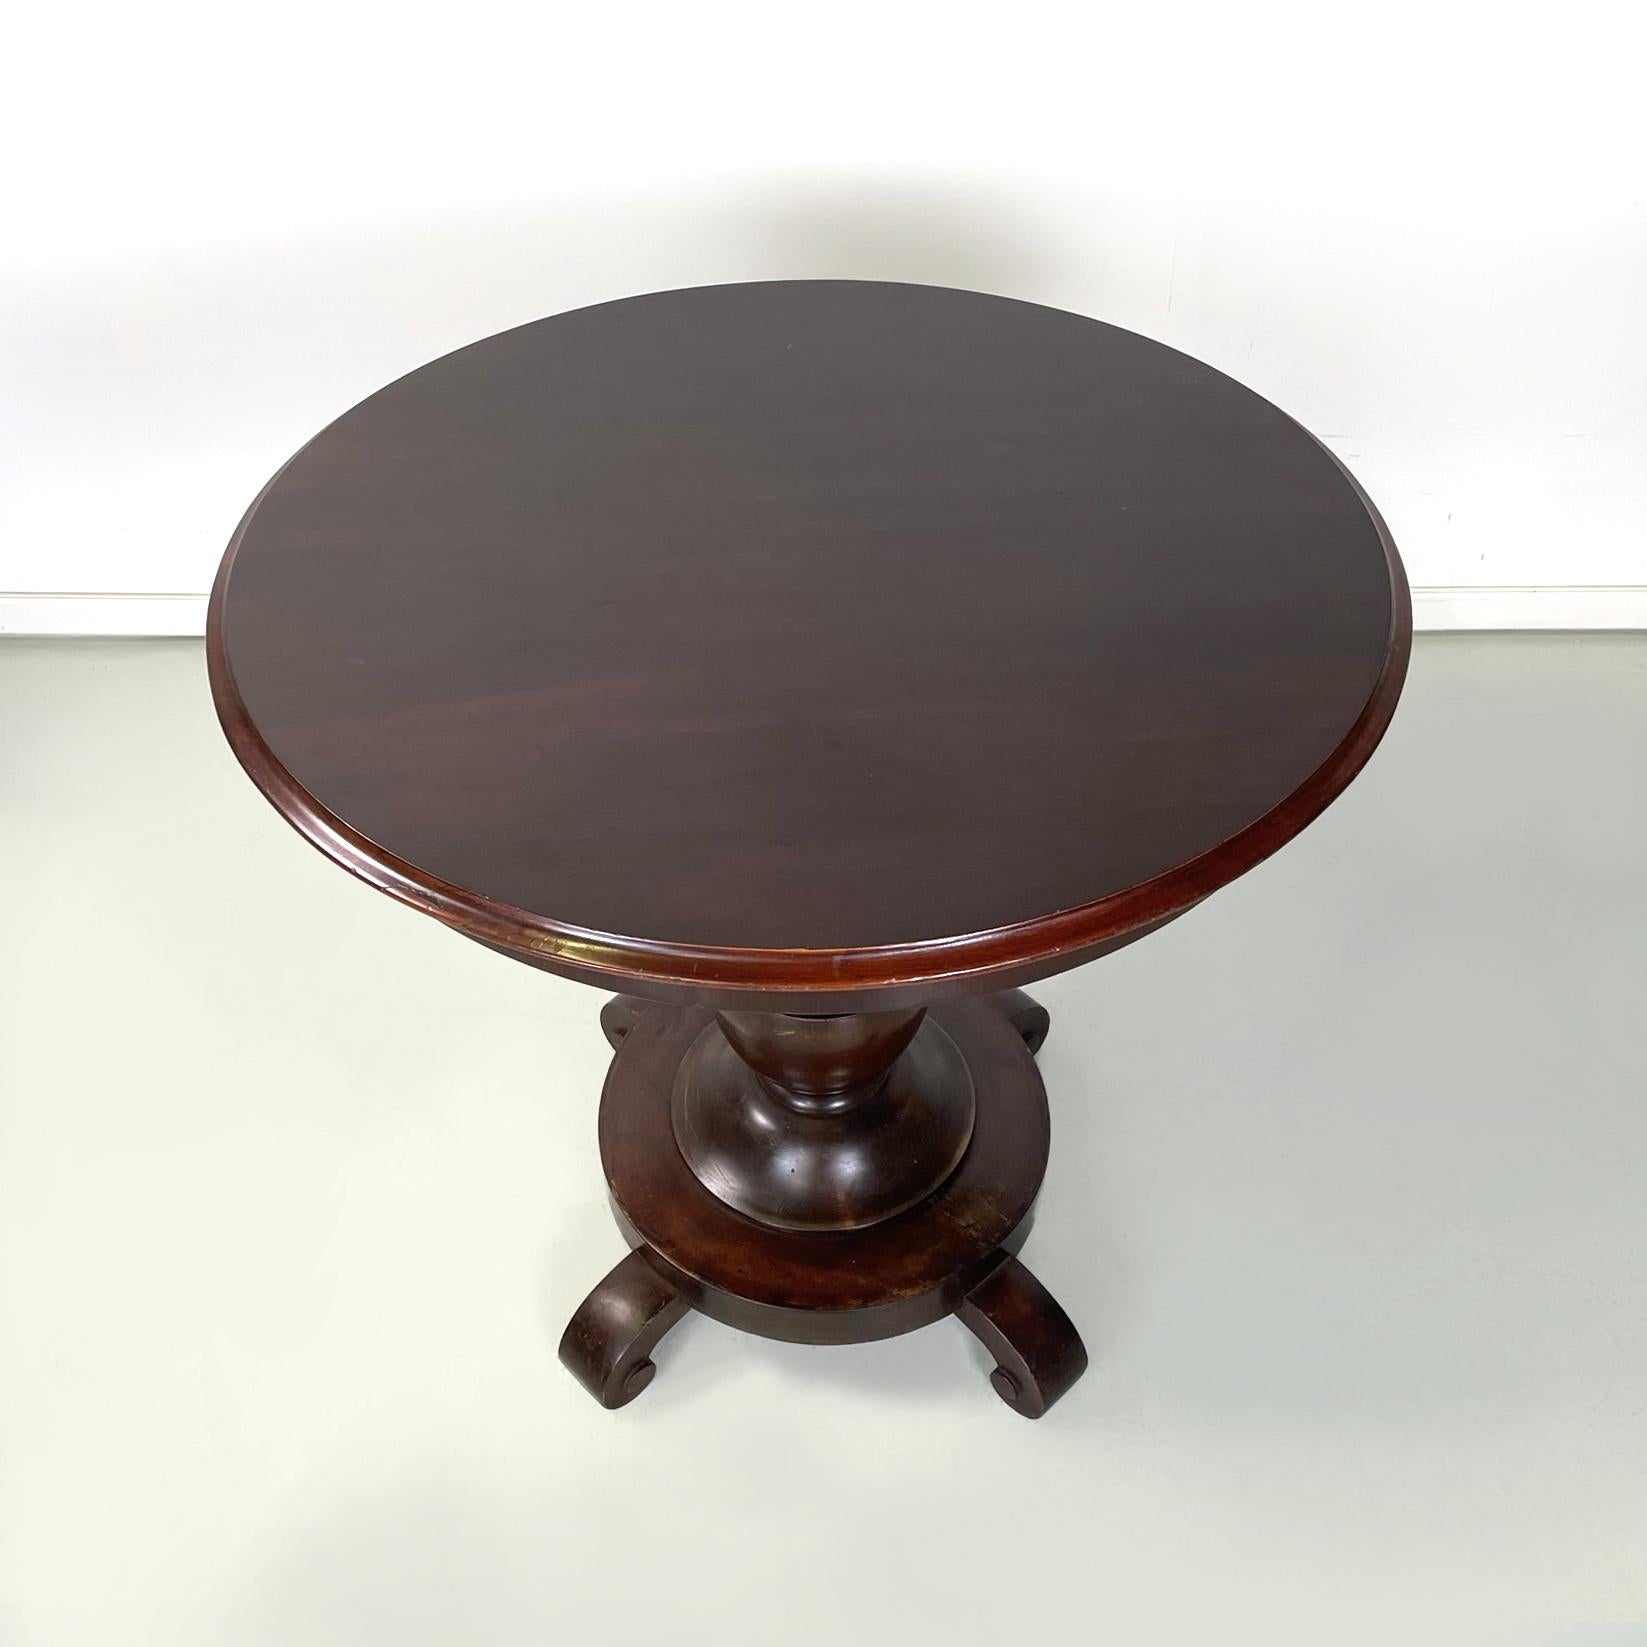 George IV Table de salle à manger italienne ancienne, ronde en noyer et en bois finement travaillé, années 1800         en vente